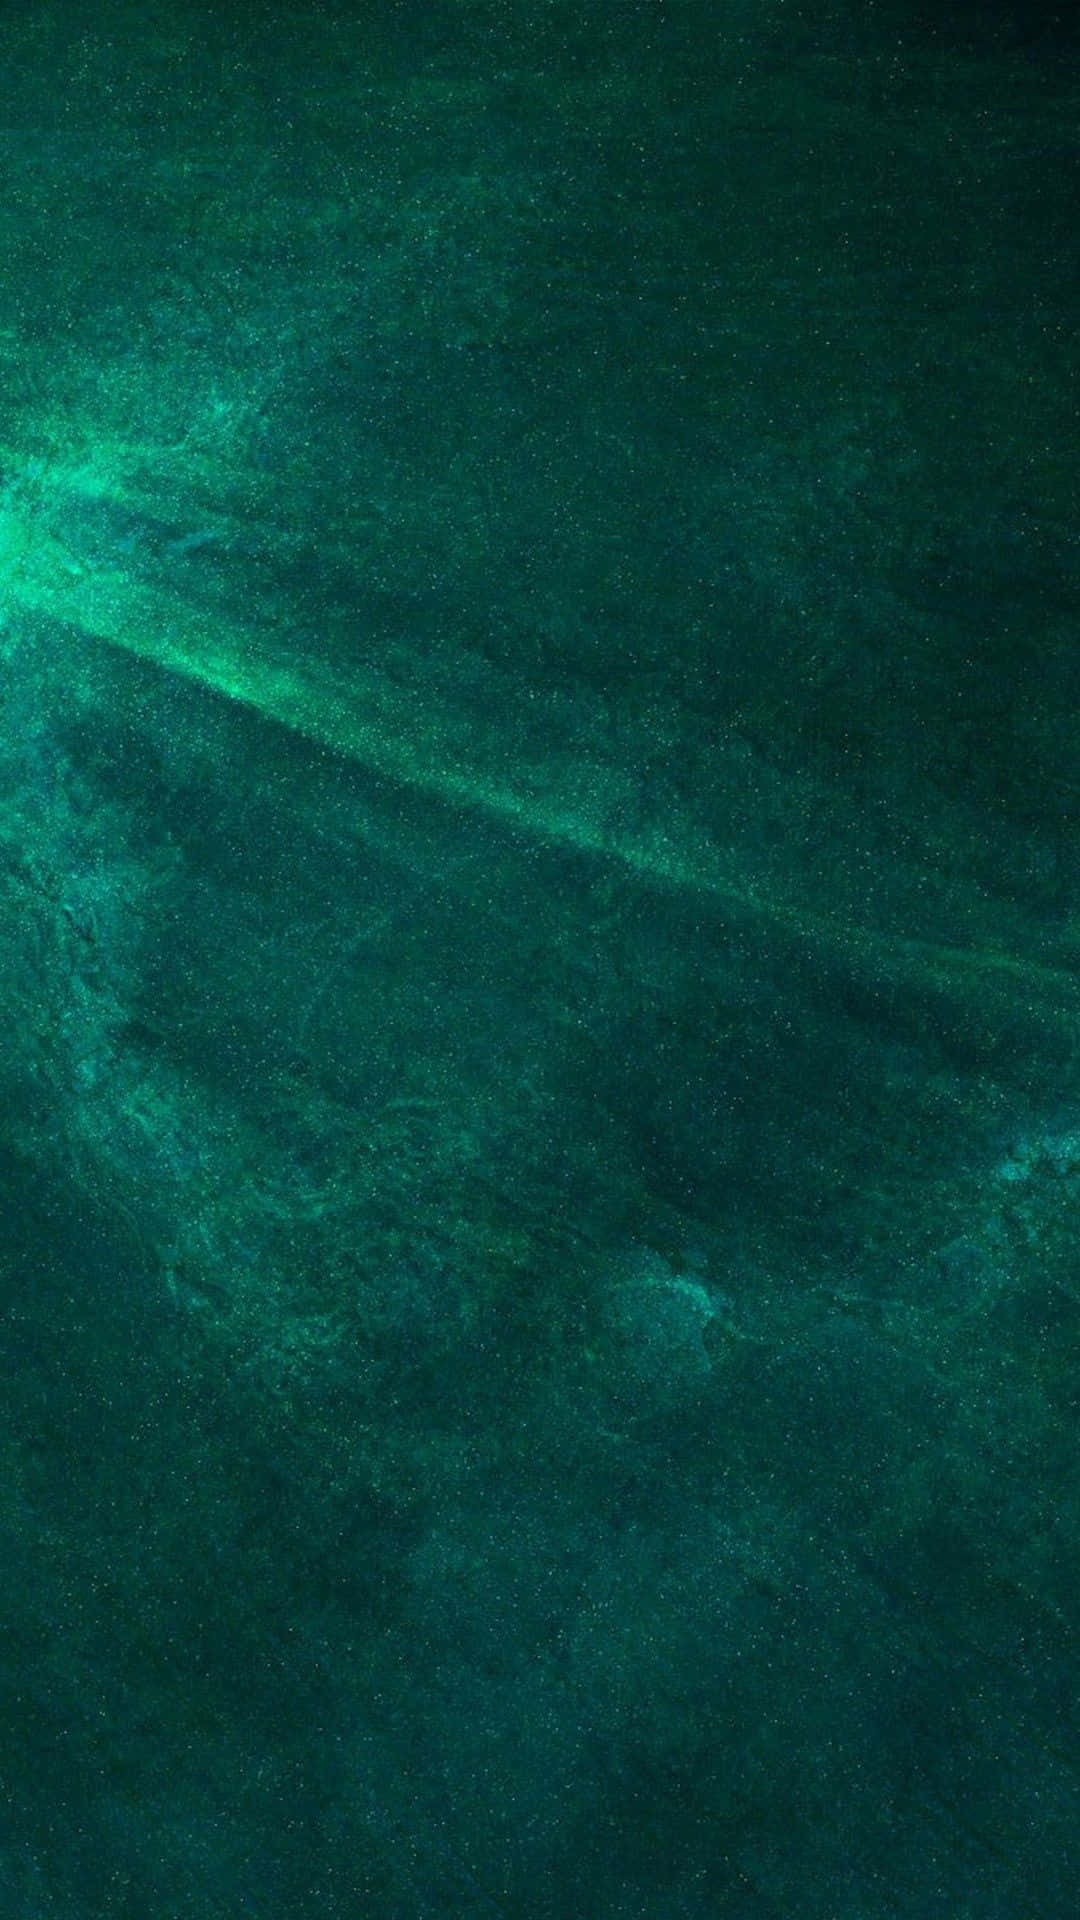 Eingrünes Wasser Wallpaper